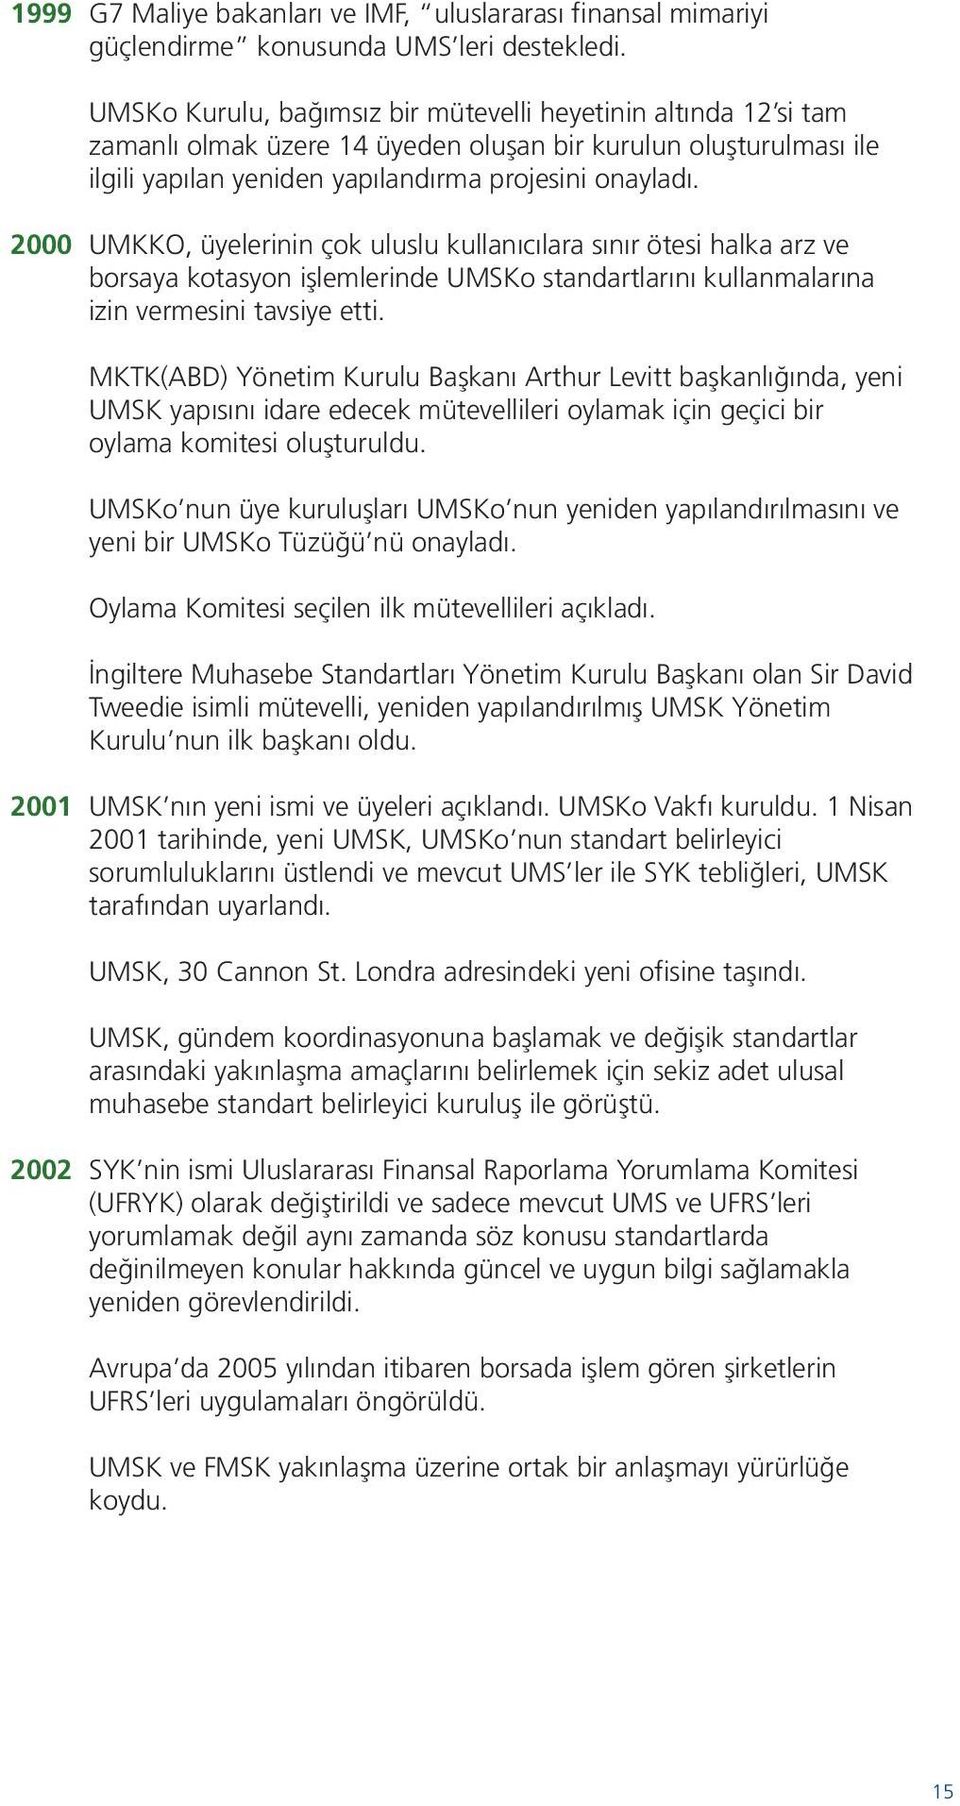 2000 UMKKO, üyelerinin çok uluslu kullanıcılara sınır ötesi halka arz ve borsaya kotasyon işlemlerinde UMSKo standartlarını kullanmalarına izin vermesini tavsiye etti.